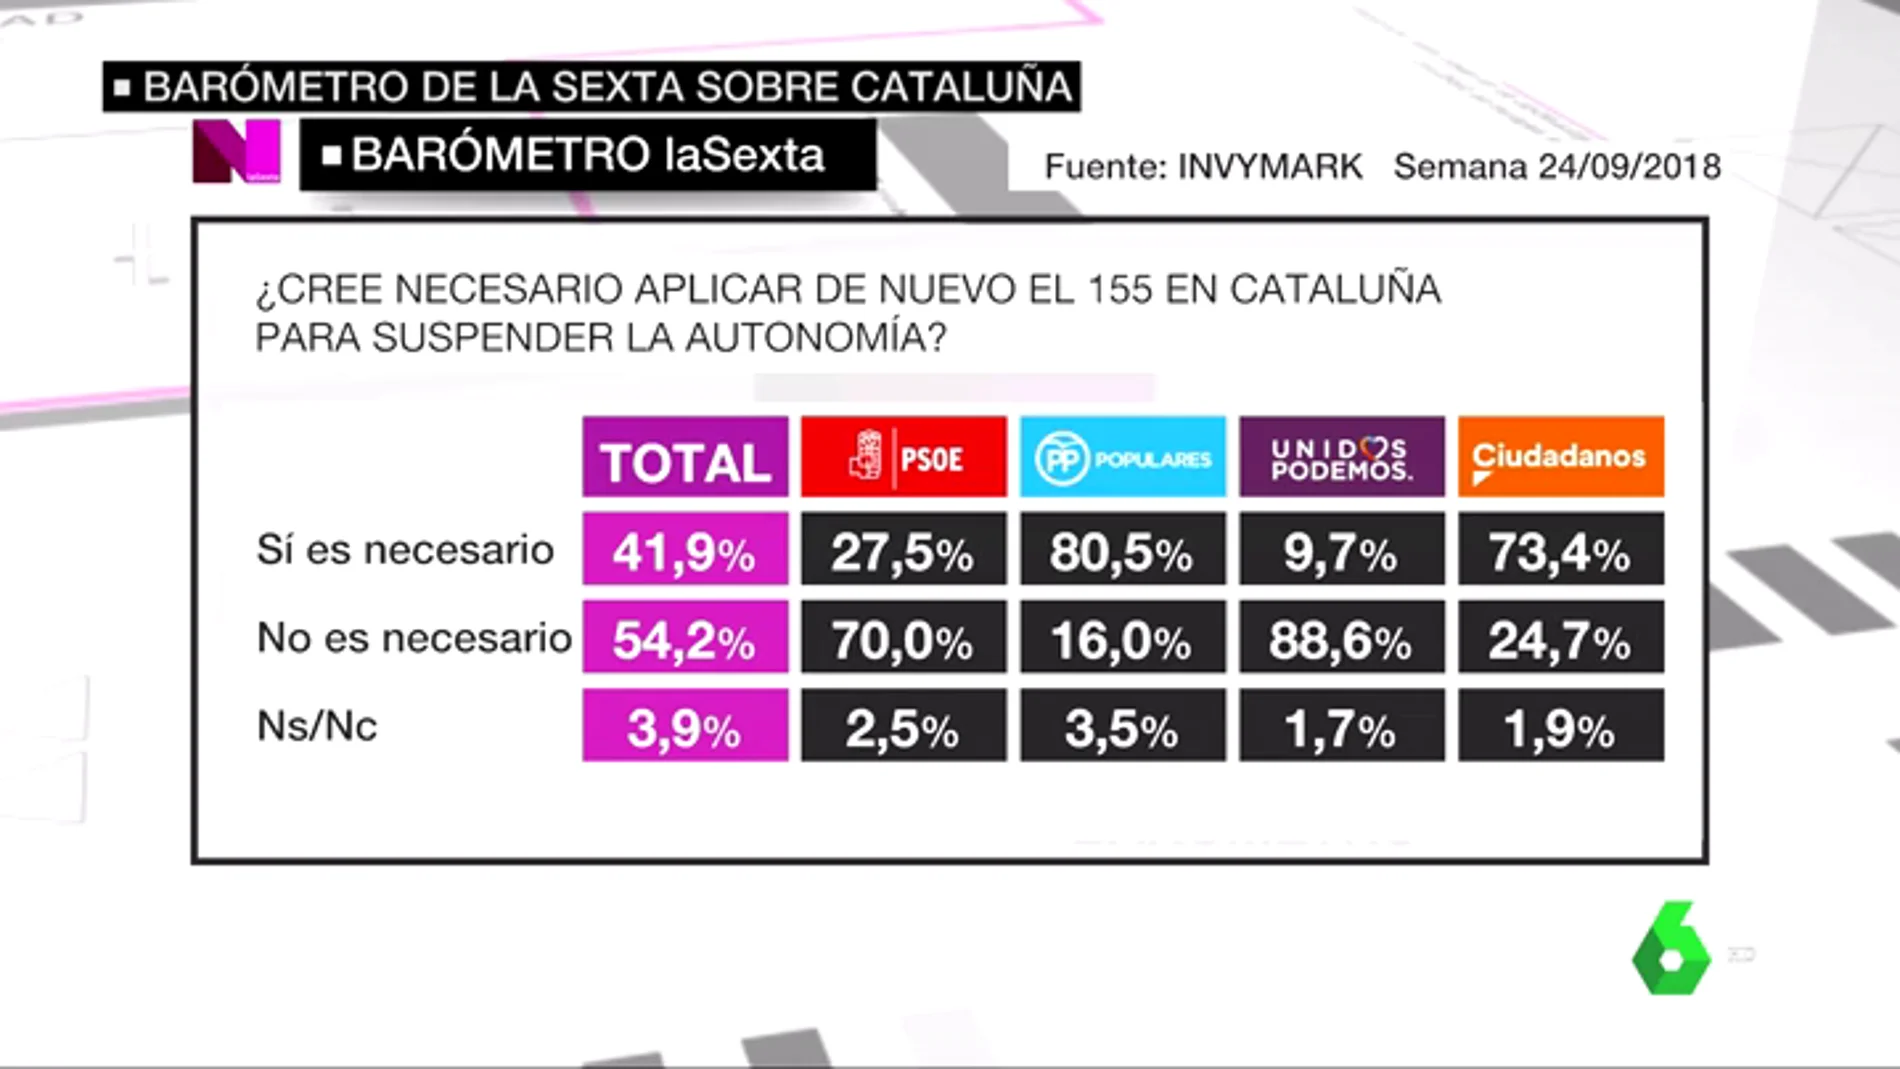 VÍDEO REEMPLAZO | Barómetro laSexta: Un 54,2% de encuestados no creen necesario aplicar de nuevo el artículo 155 en Cataluña